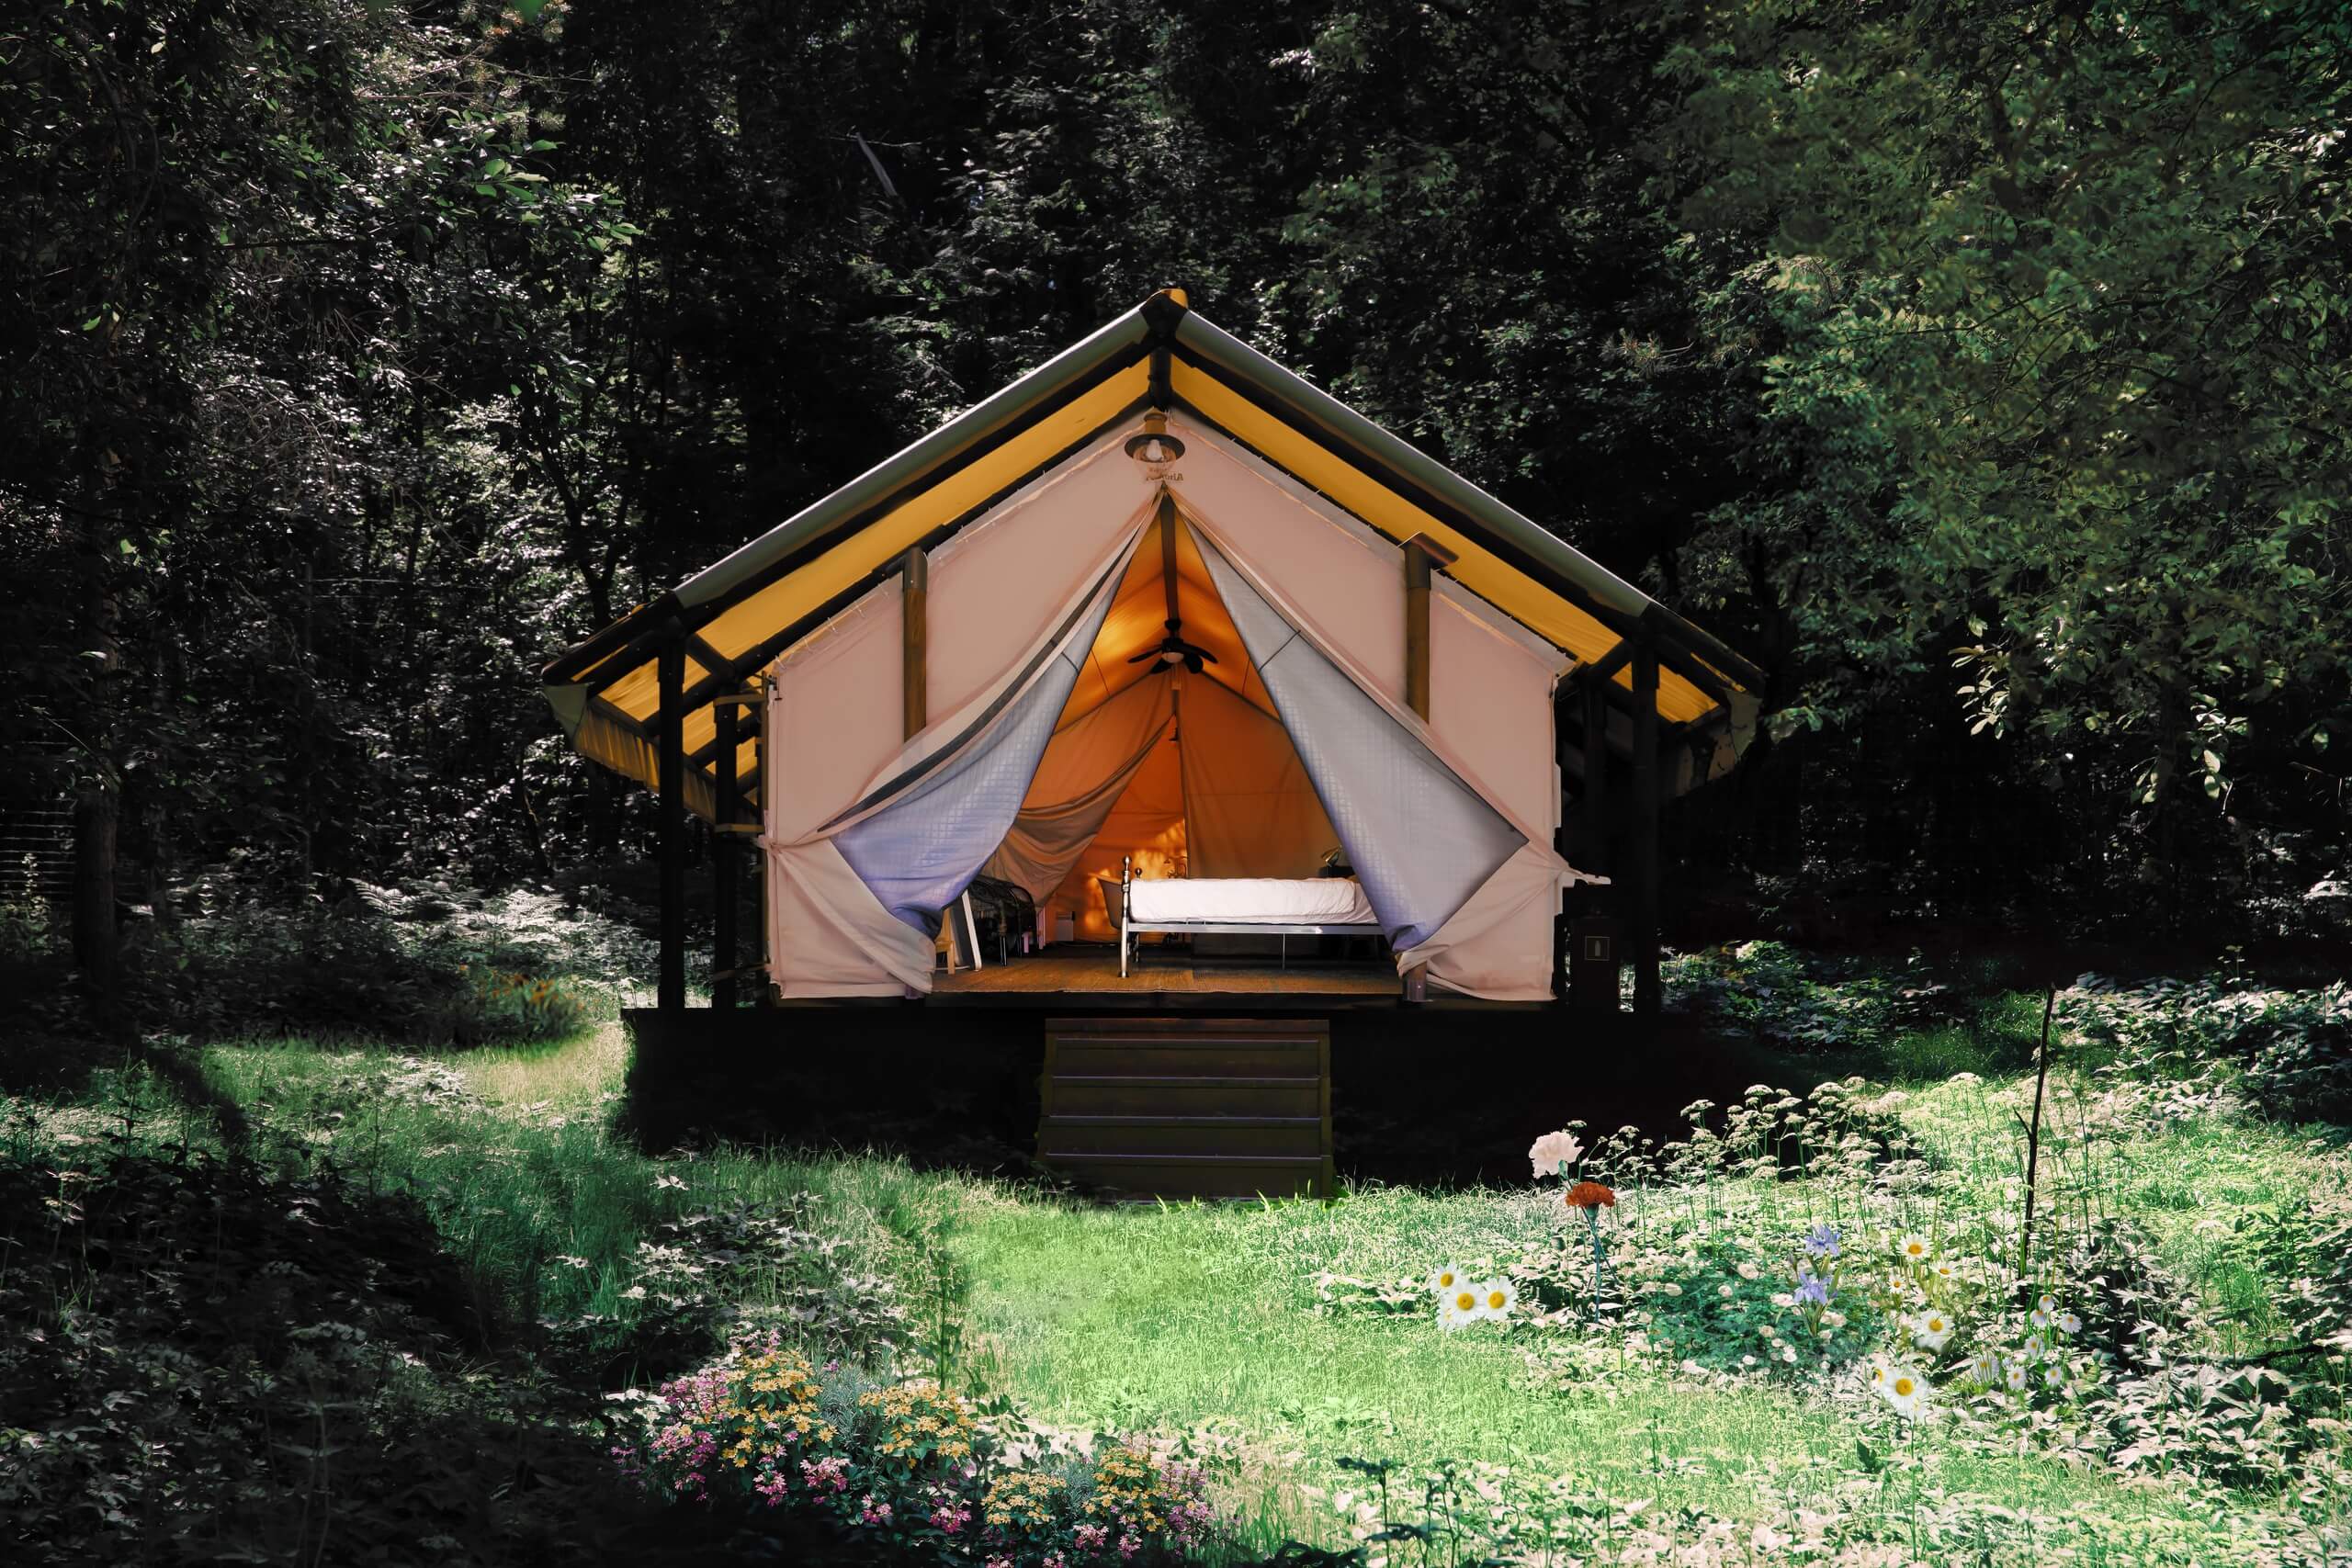 Сафари-палатка в лиственном лесу - оригинальное место для отдыха.